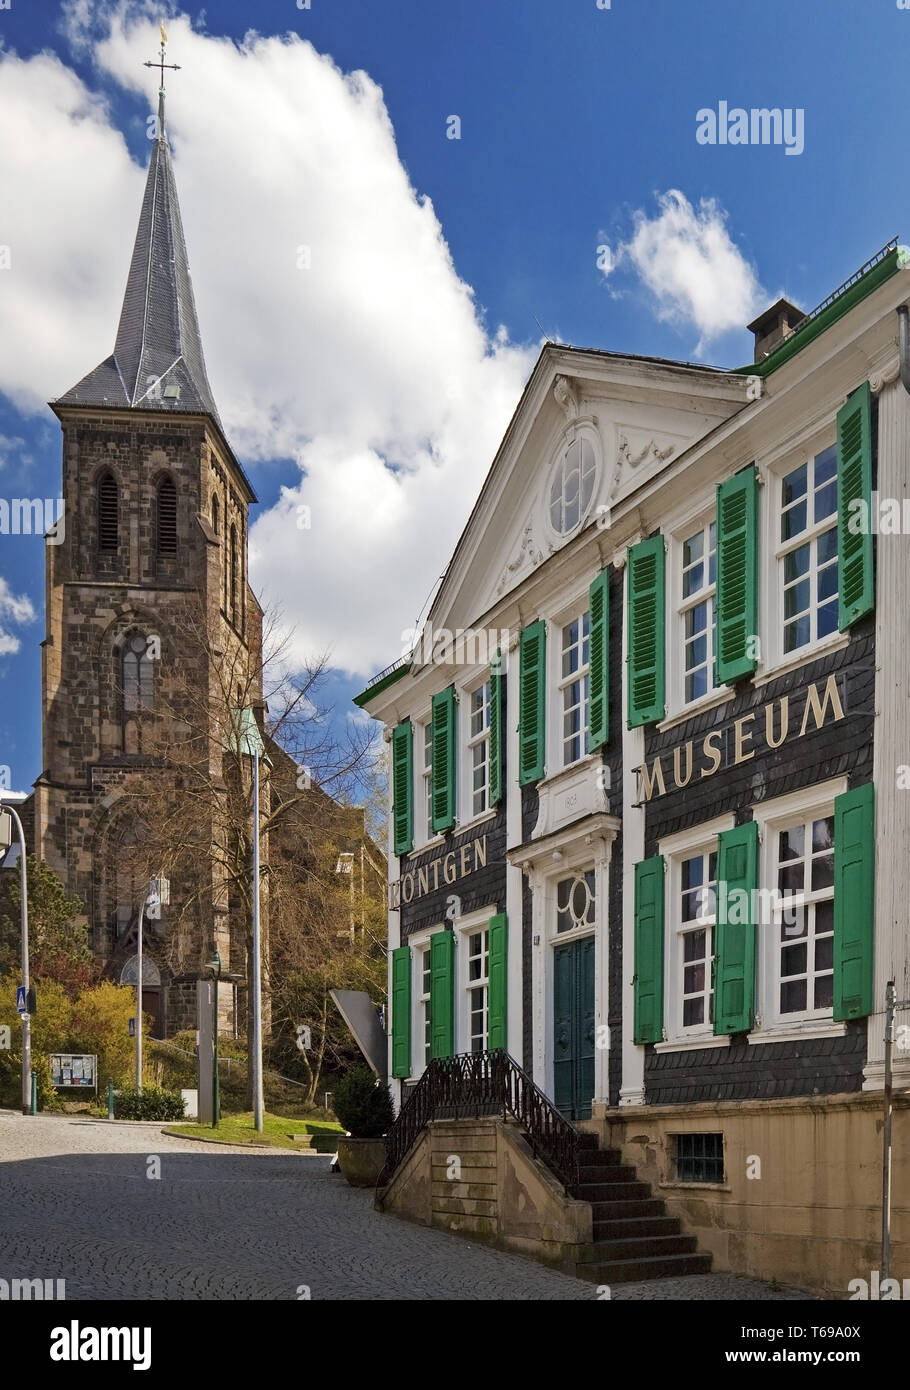 Roentgen-Museum allemand avec l'église St.-Bonaventura, Remscheid, Rhénanie du Nord-Westphalie, Allemagne Banque D'Images